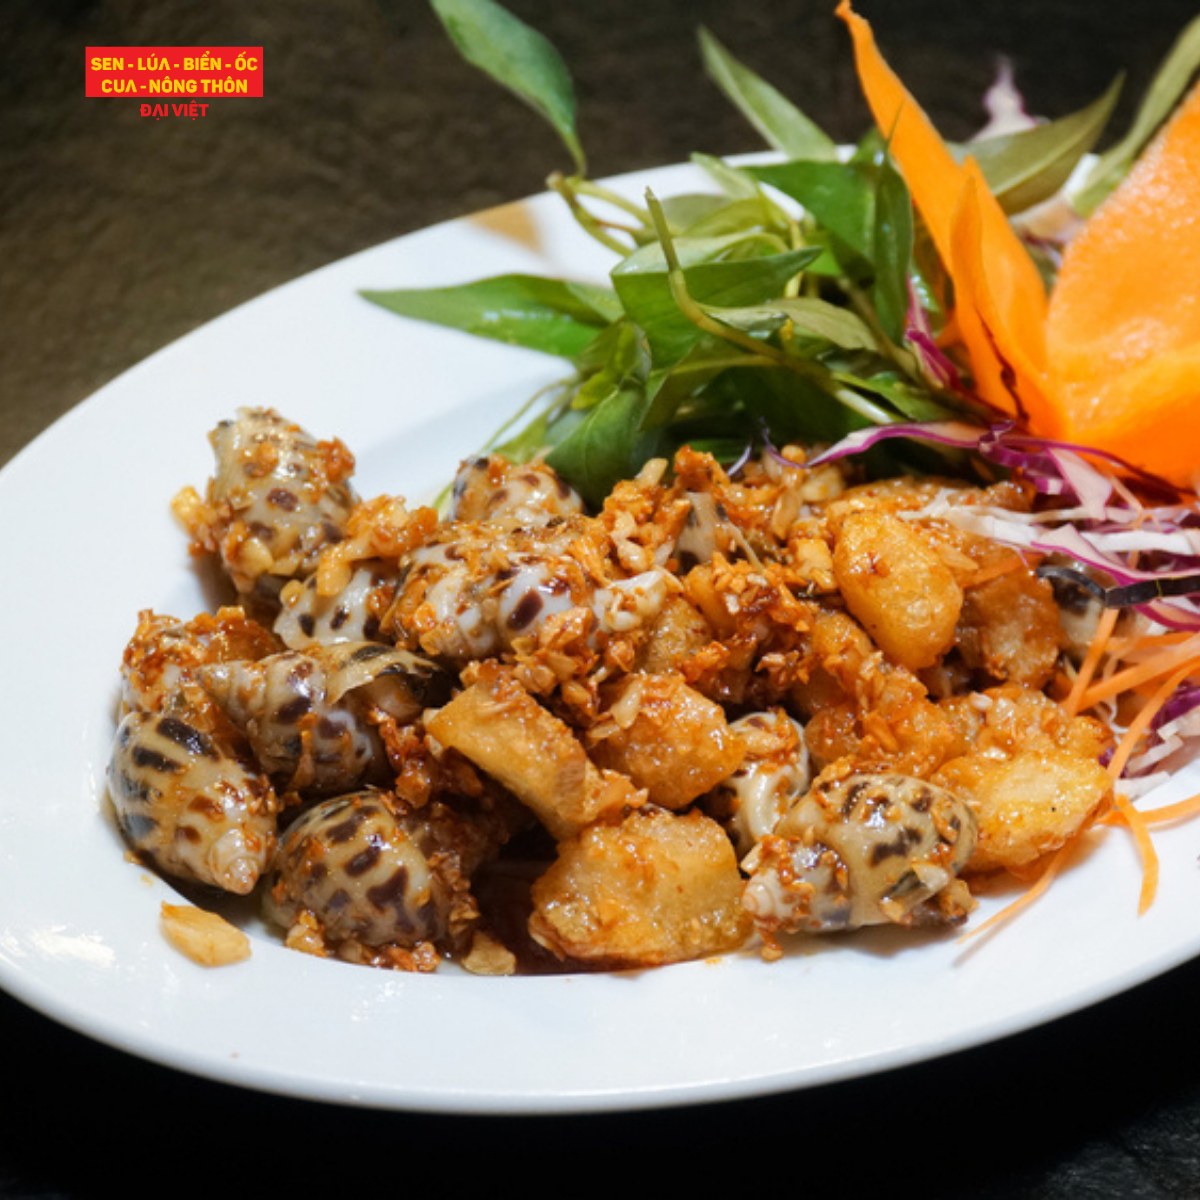  Pan-fried Sweet Snail With Garlic - Ốc Hương Cháy Tỏi 